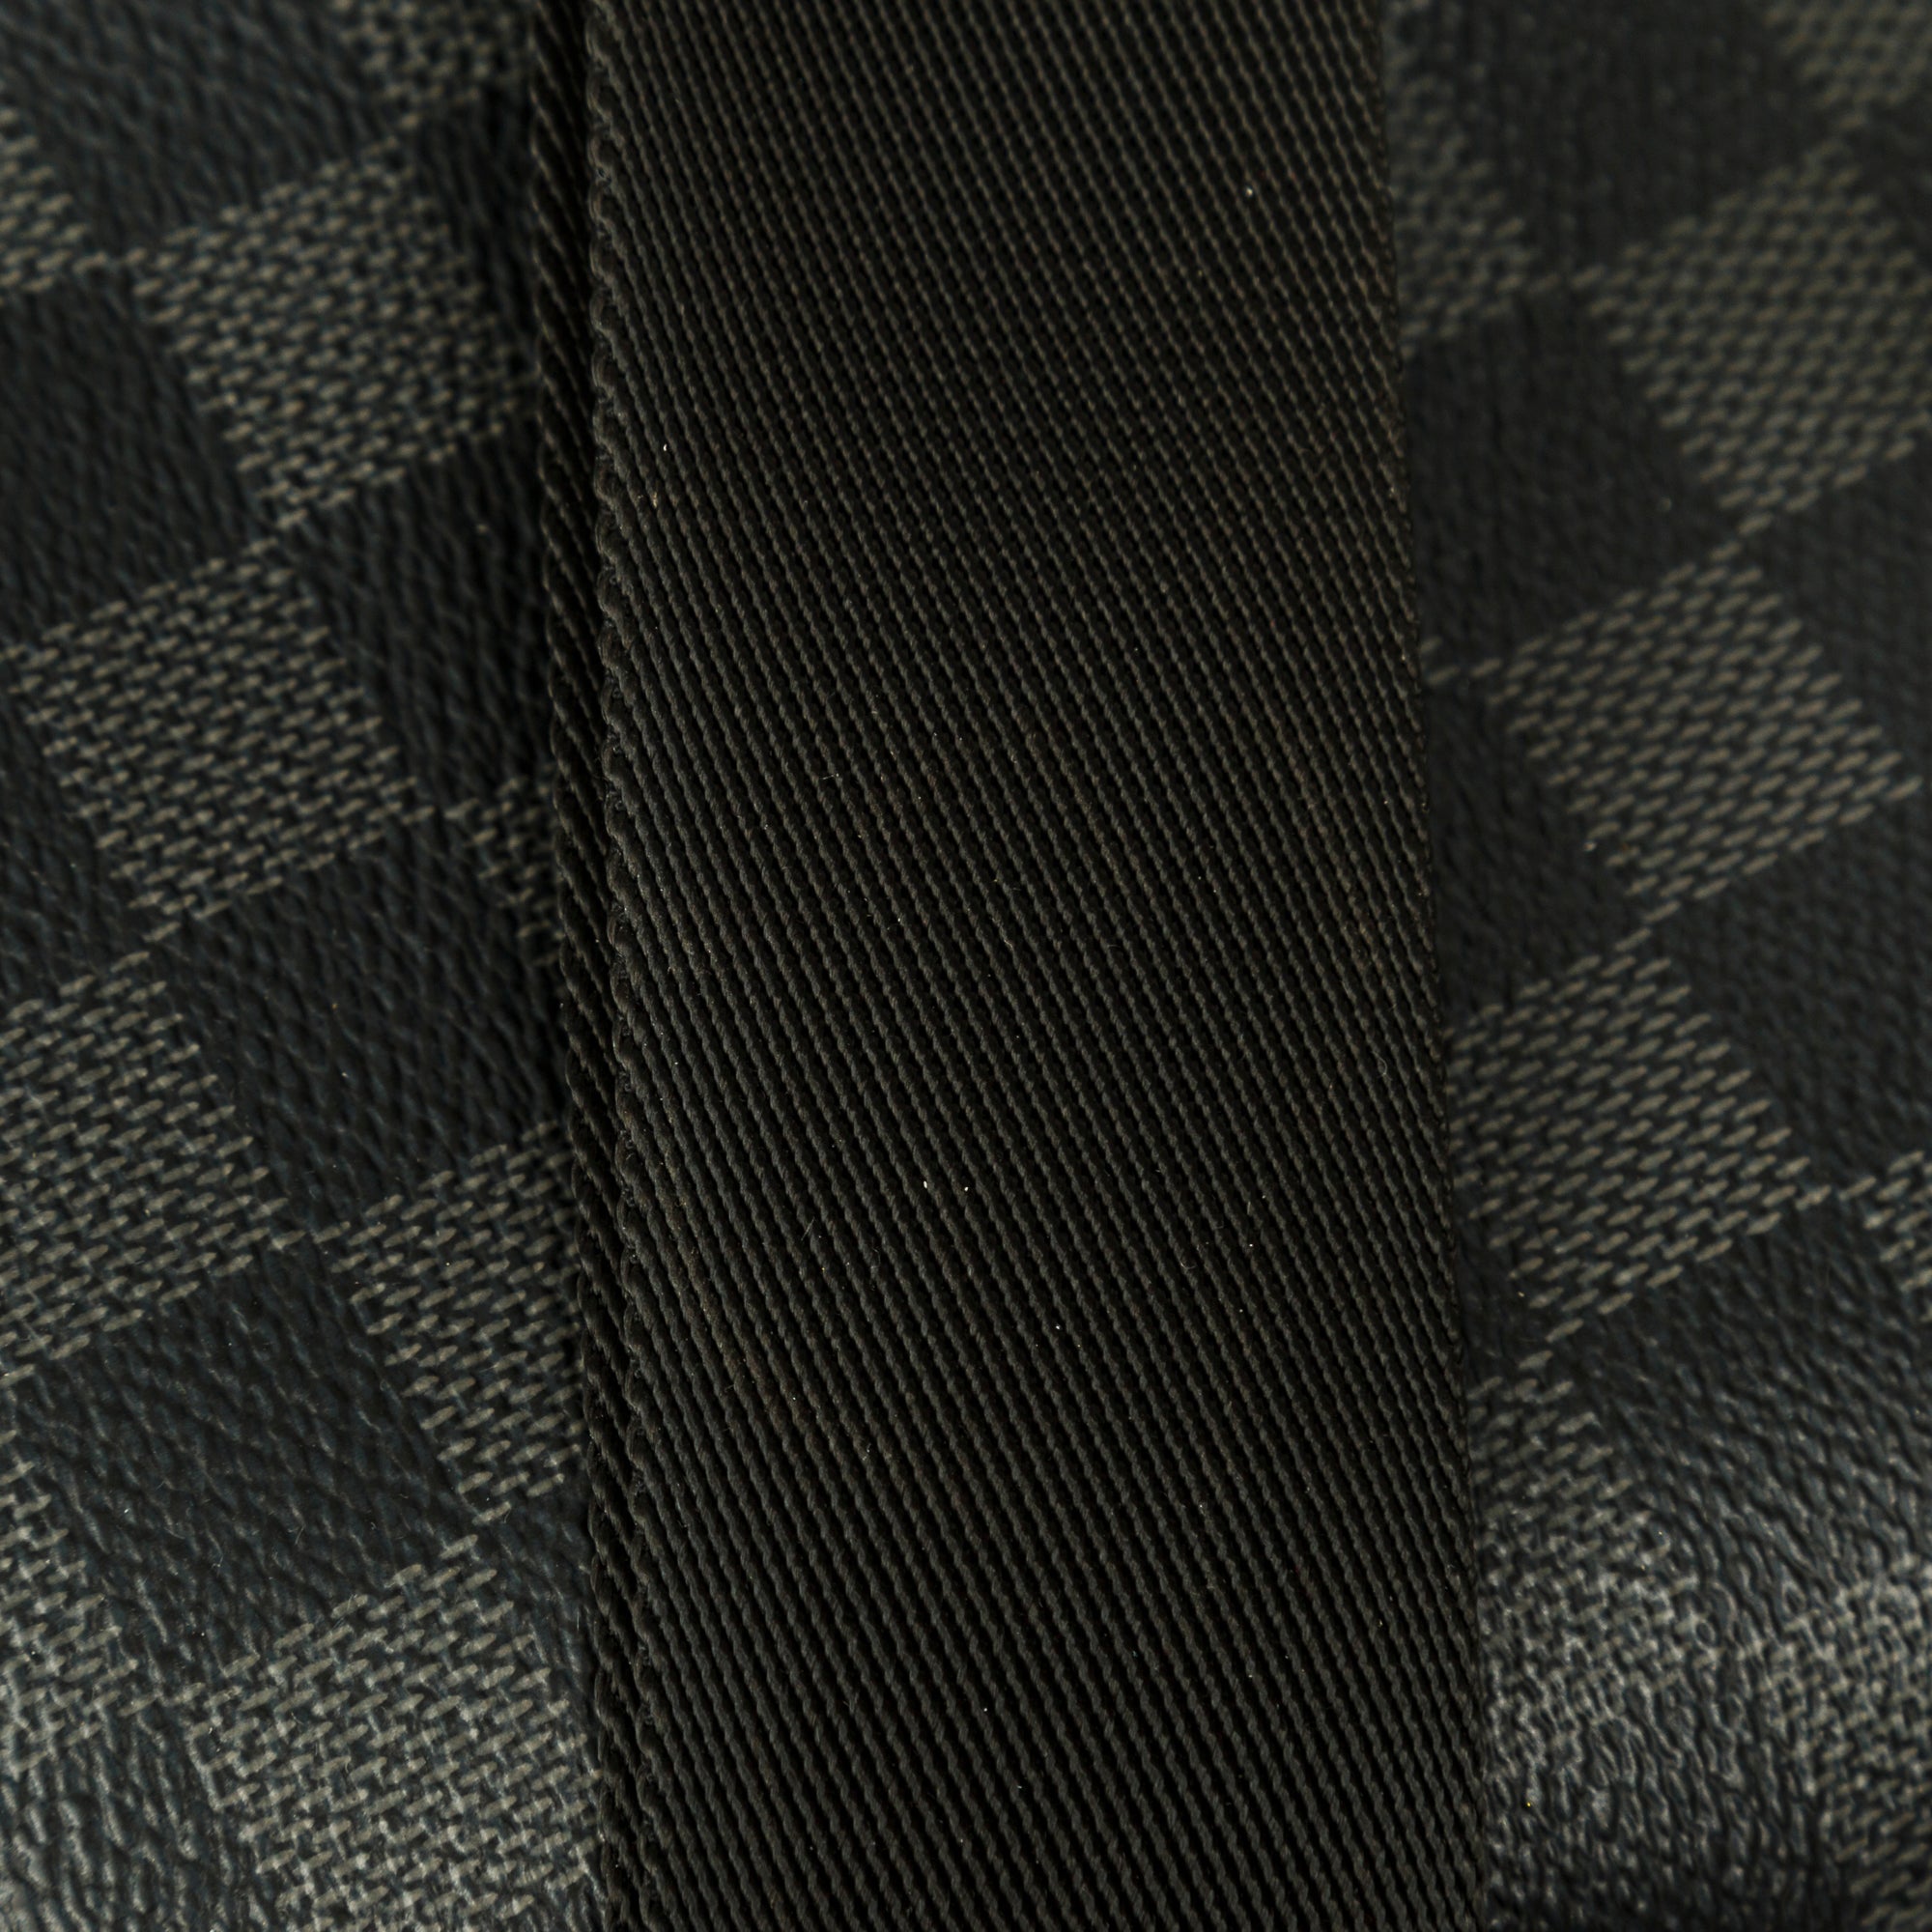 Louis Vuitton Scott Messenger Bag In - dripnation_offical